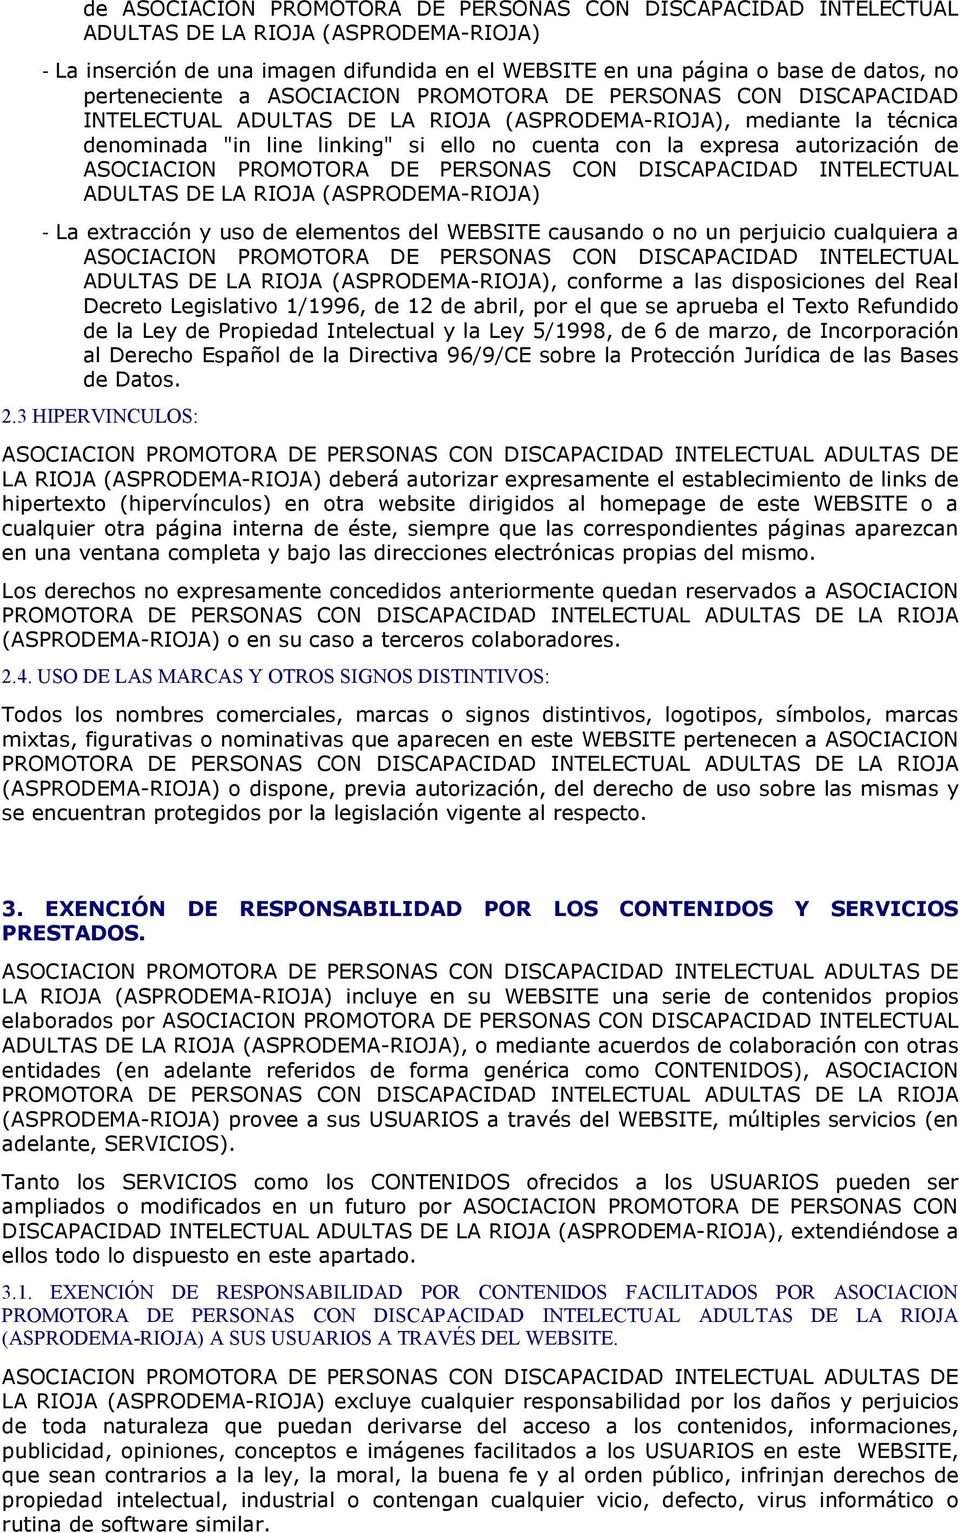 autorización de ASOCIACION PROMOTORA DE PERSONAS CON DISCAPACIDAD INTELECTUAL ADULTAS DE LA RIOJA (ASPRODEMA-RIOJA) - La extracción y uso de elementos del WEBSITE causando o no un perjuicio